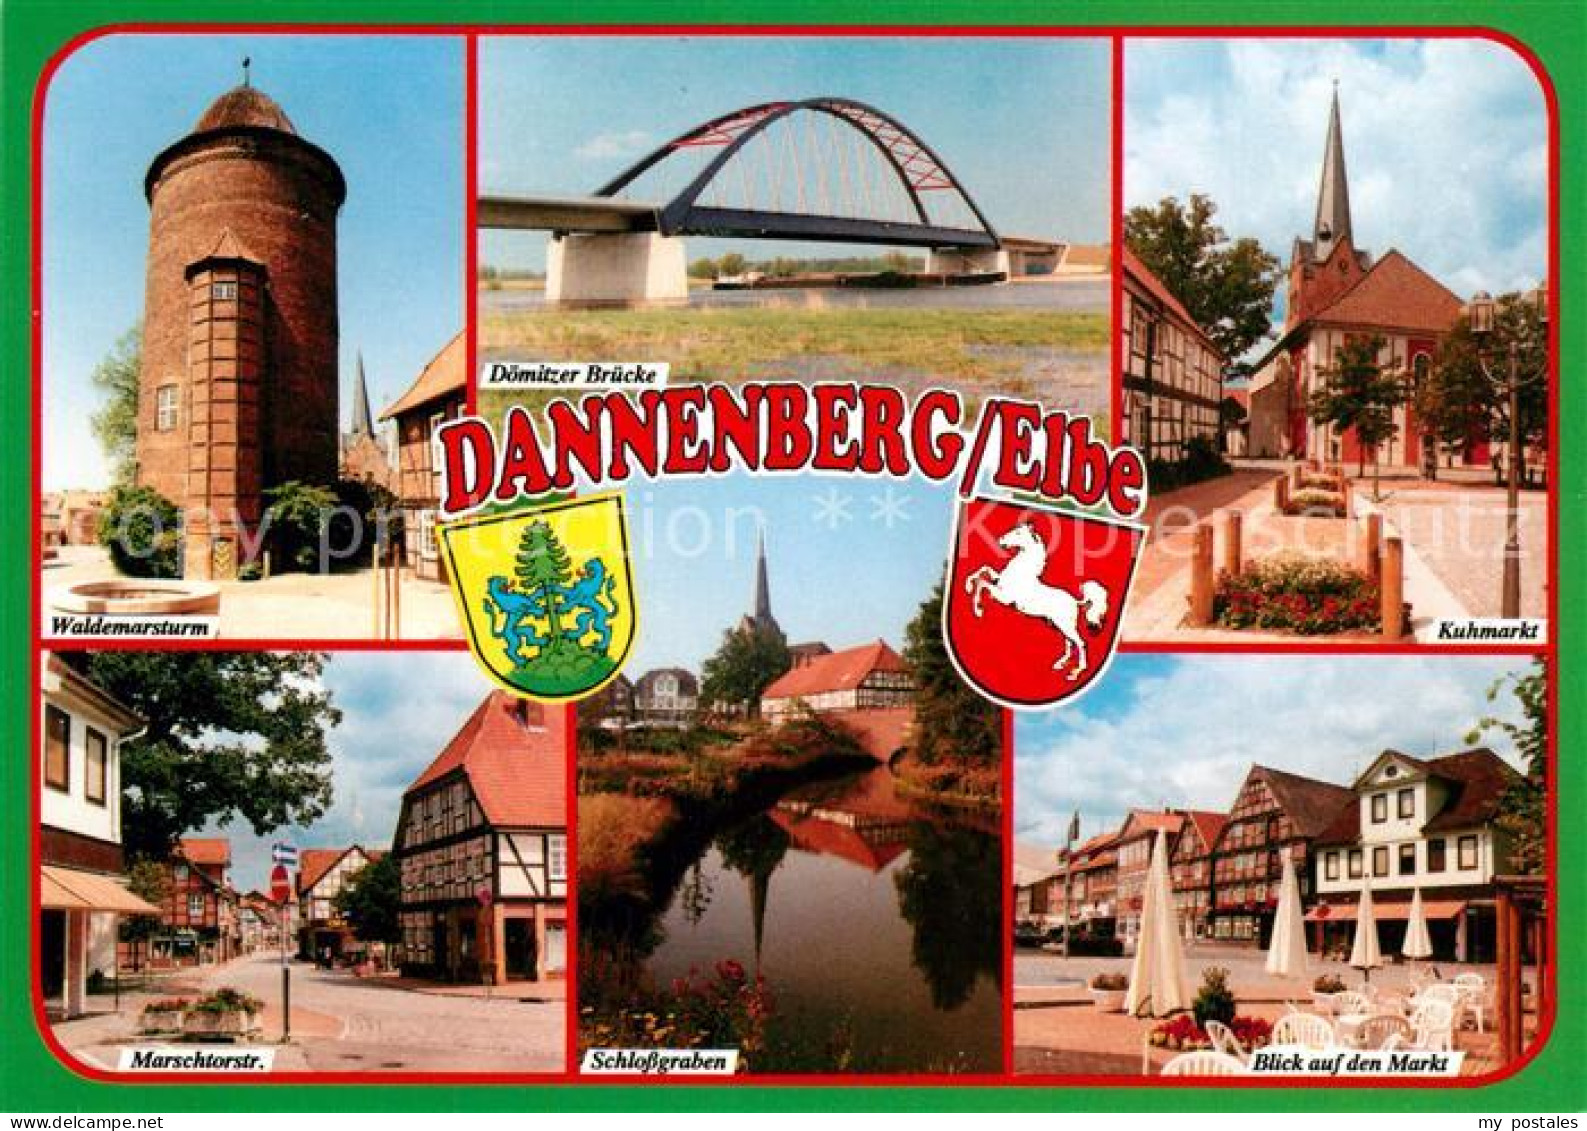 73234071 Dannenberg Elbe Waldemarsturm Doemitzer Bruecke Kuhmarkt Schlossgraben  - Dannenberg